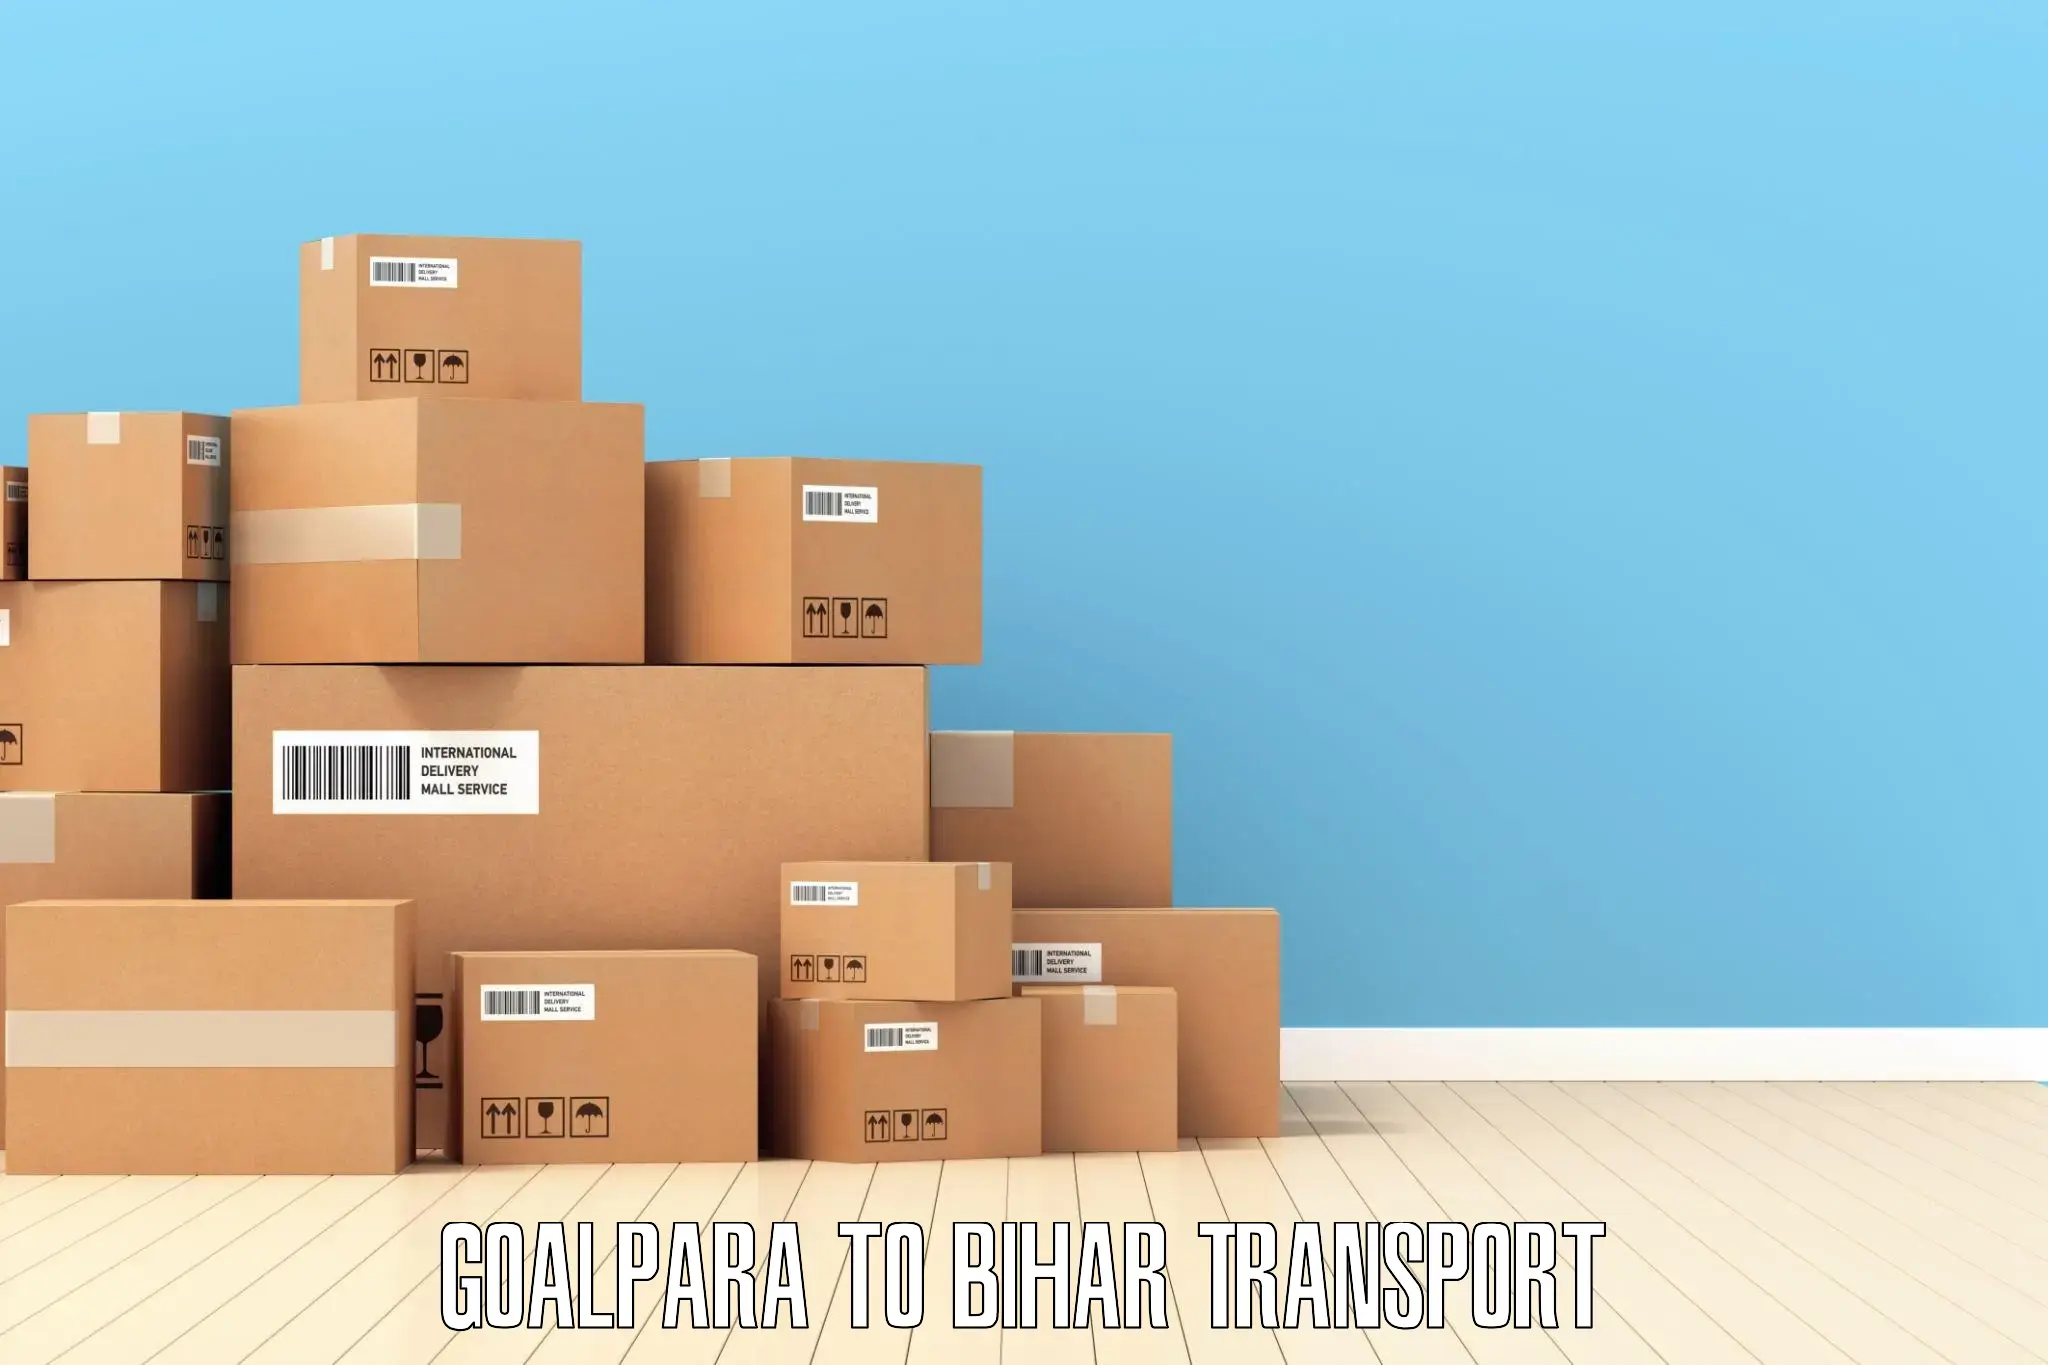 Vehicle transport services Goalpara to Palasi Araria